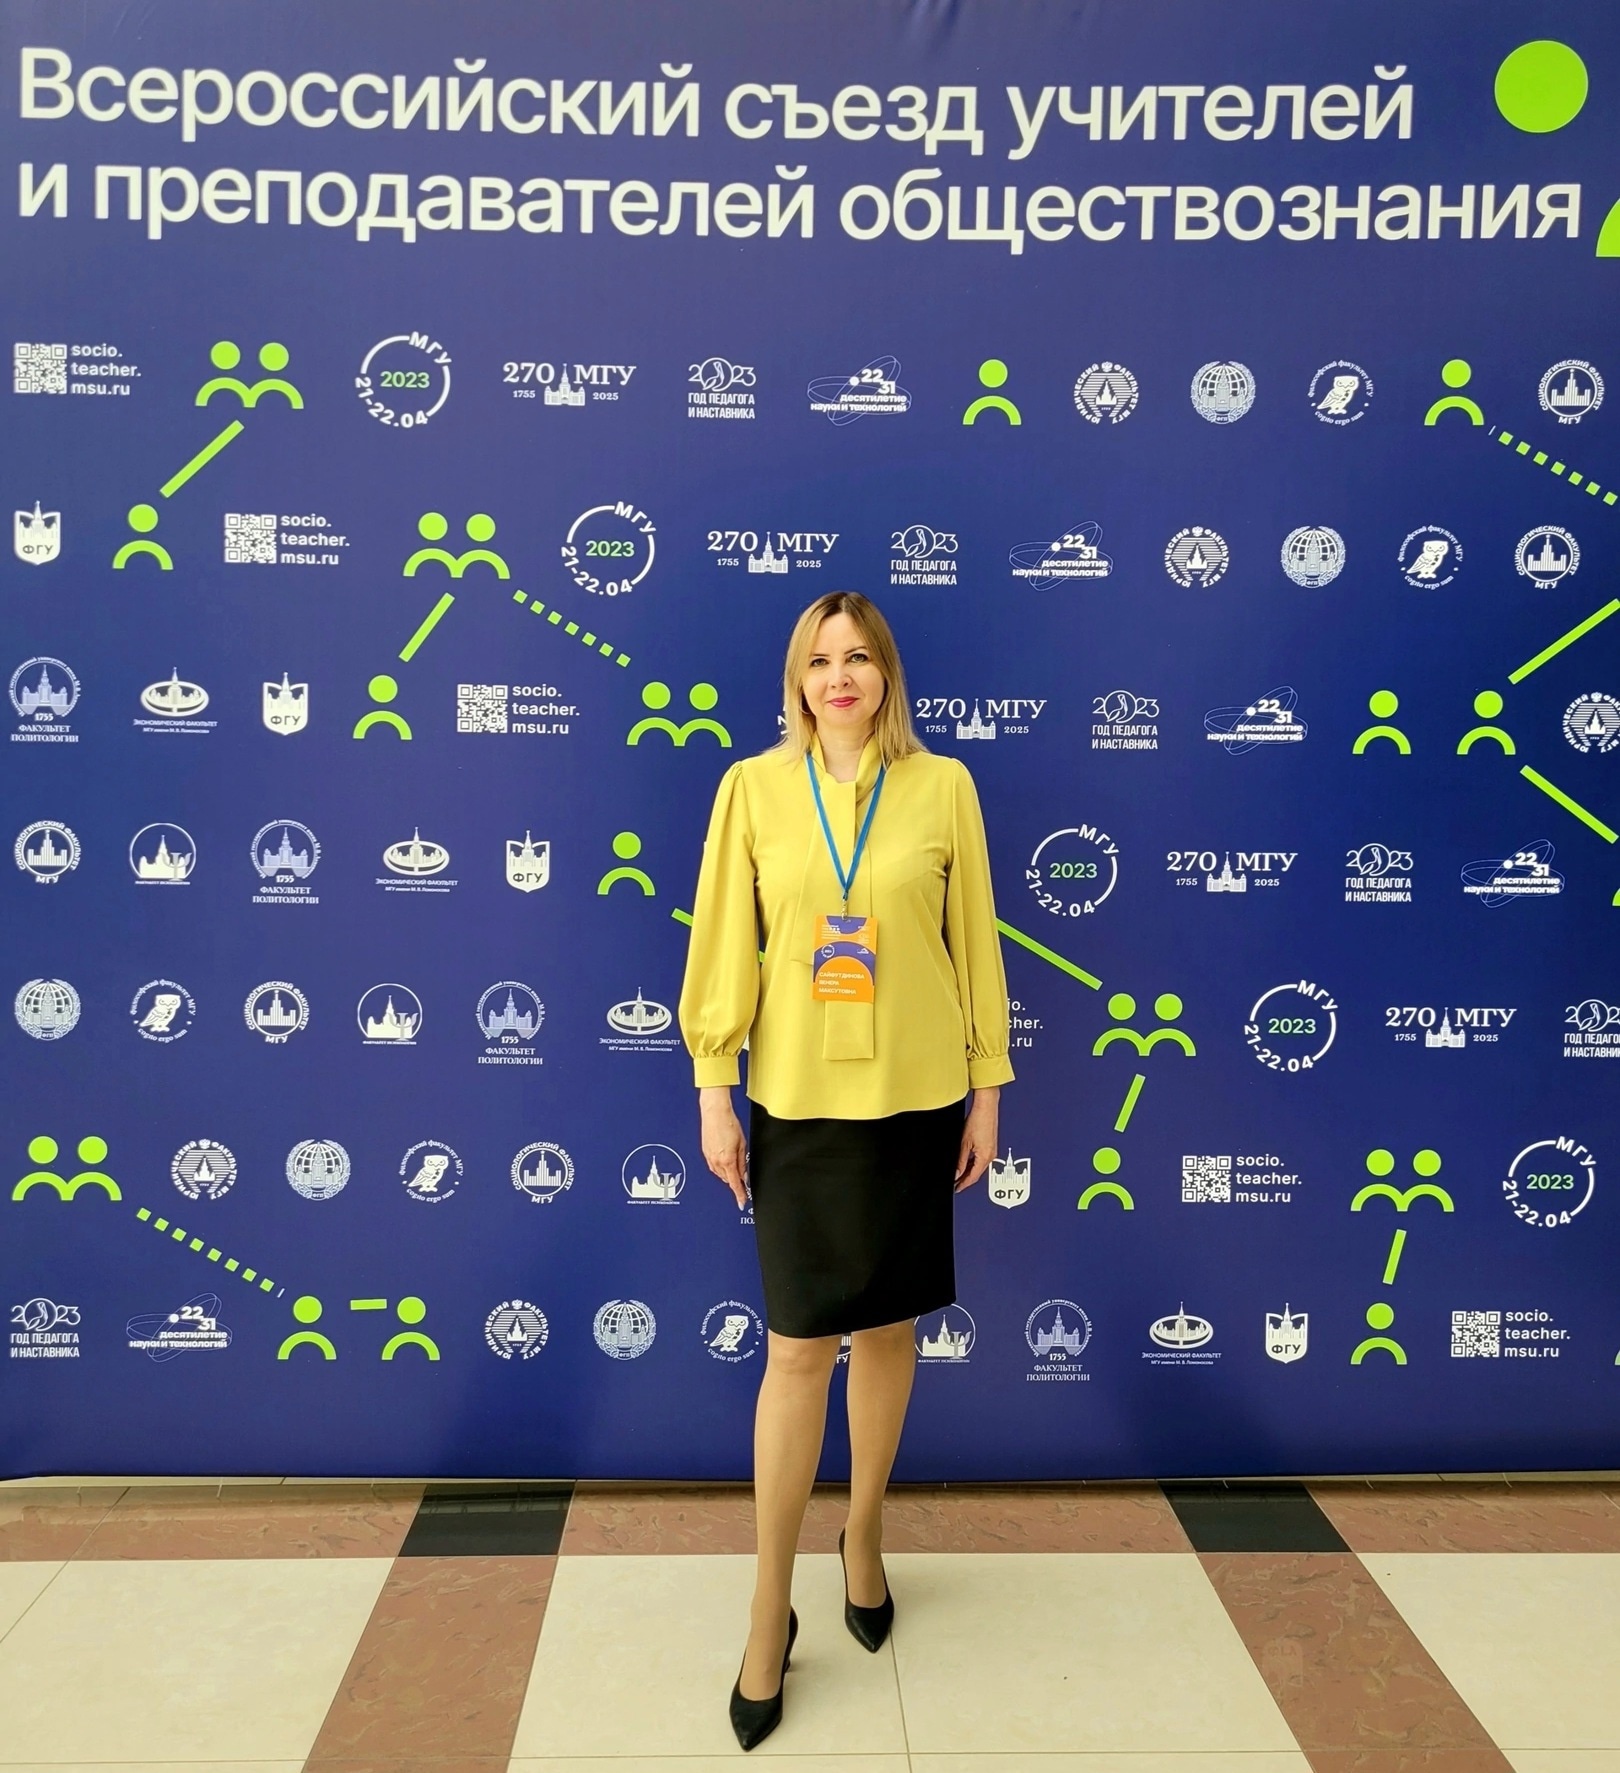 Представитель Института права выступил на Всероссийском съезде учителей обществознания и преподавателей вузов